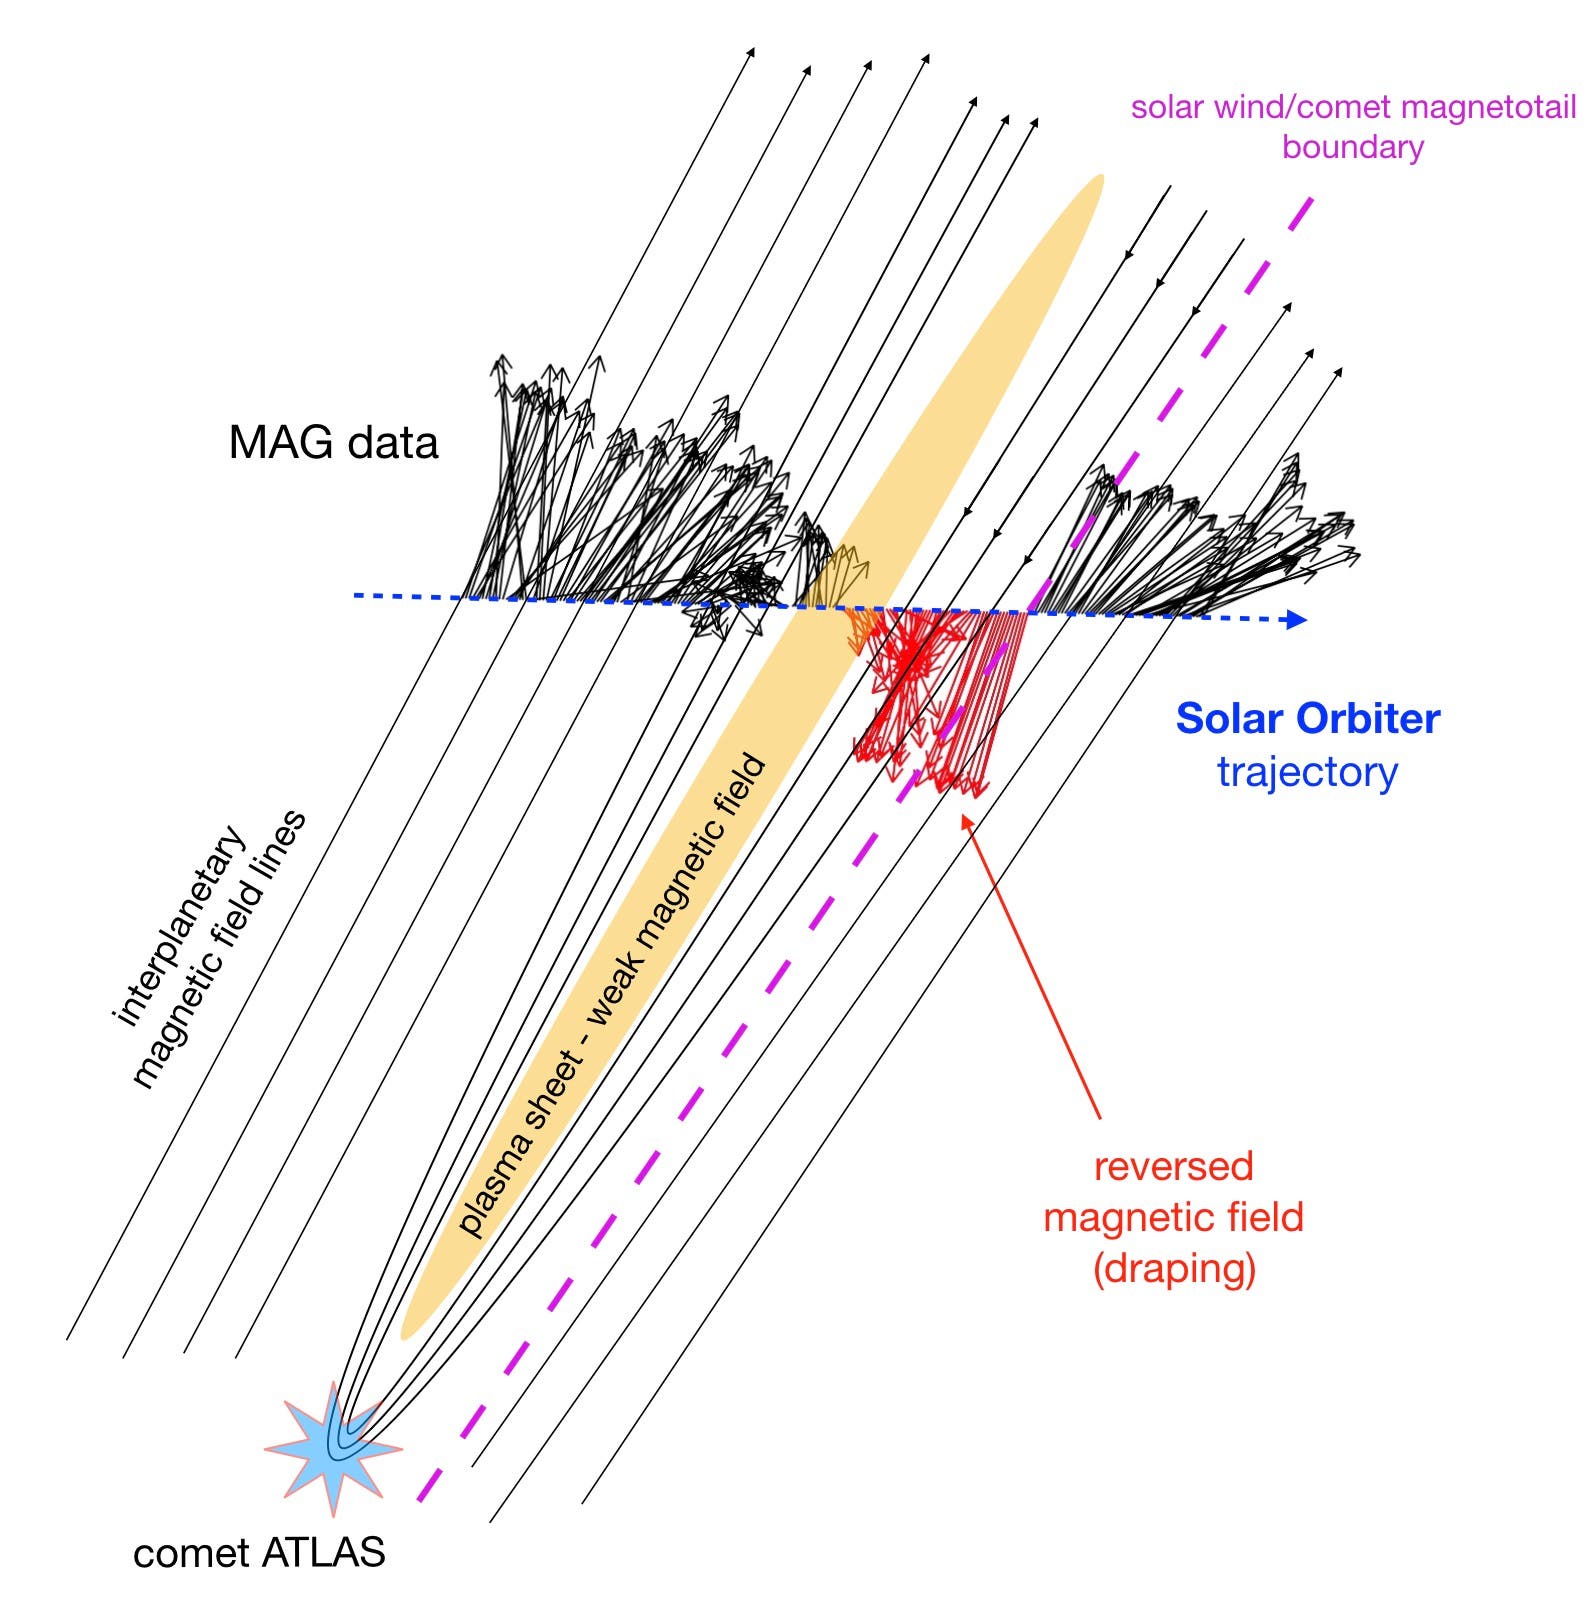 Im Diagramm kennzeichnen Linien interplanetare Magnetfeldlinien im Sonnenwind. Daten des Magnetometers der Raumsonde wiederum sind entlang ihrer Flugbahn dargestellt. Dabei zeigen Pfeile die Richtung des Magnetfelds und dessen Länge an. Die identifizierte scharfe Grenze zwischen dem Schweif und dem umgebenden Sonnenwind ist mit der magentafarbenen gestrichelten Linie dargestellt.